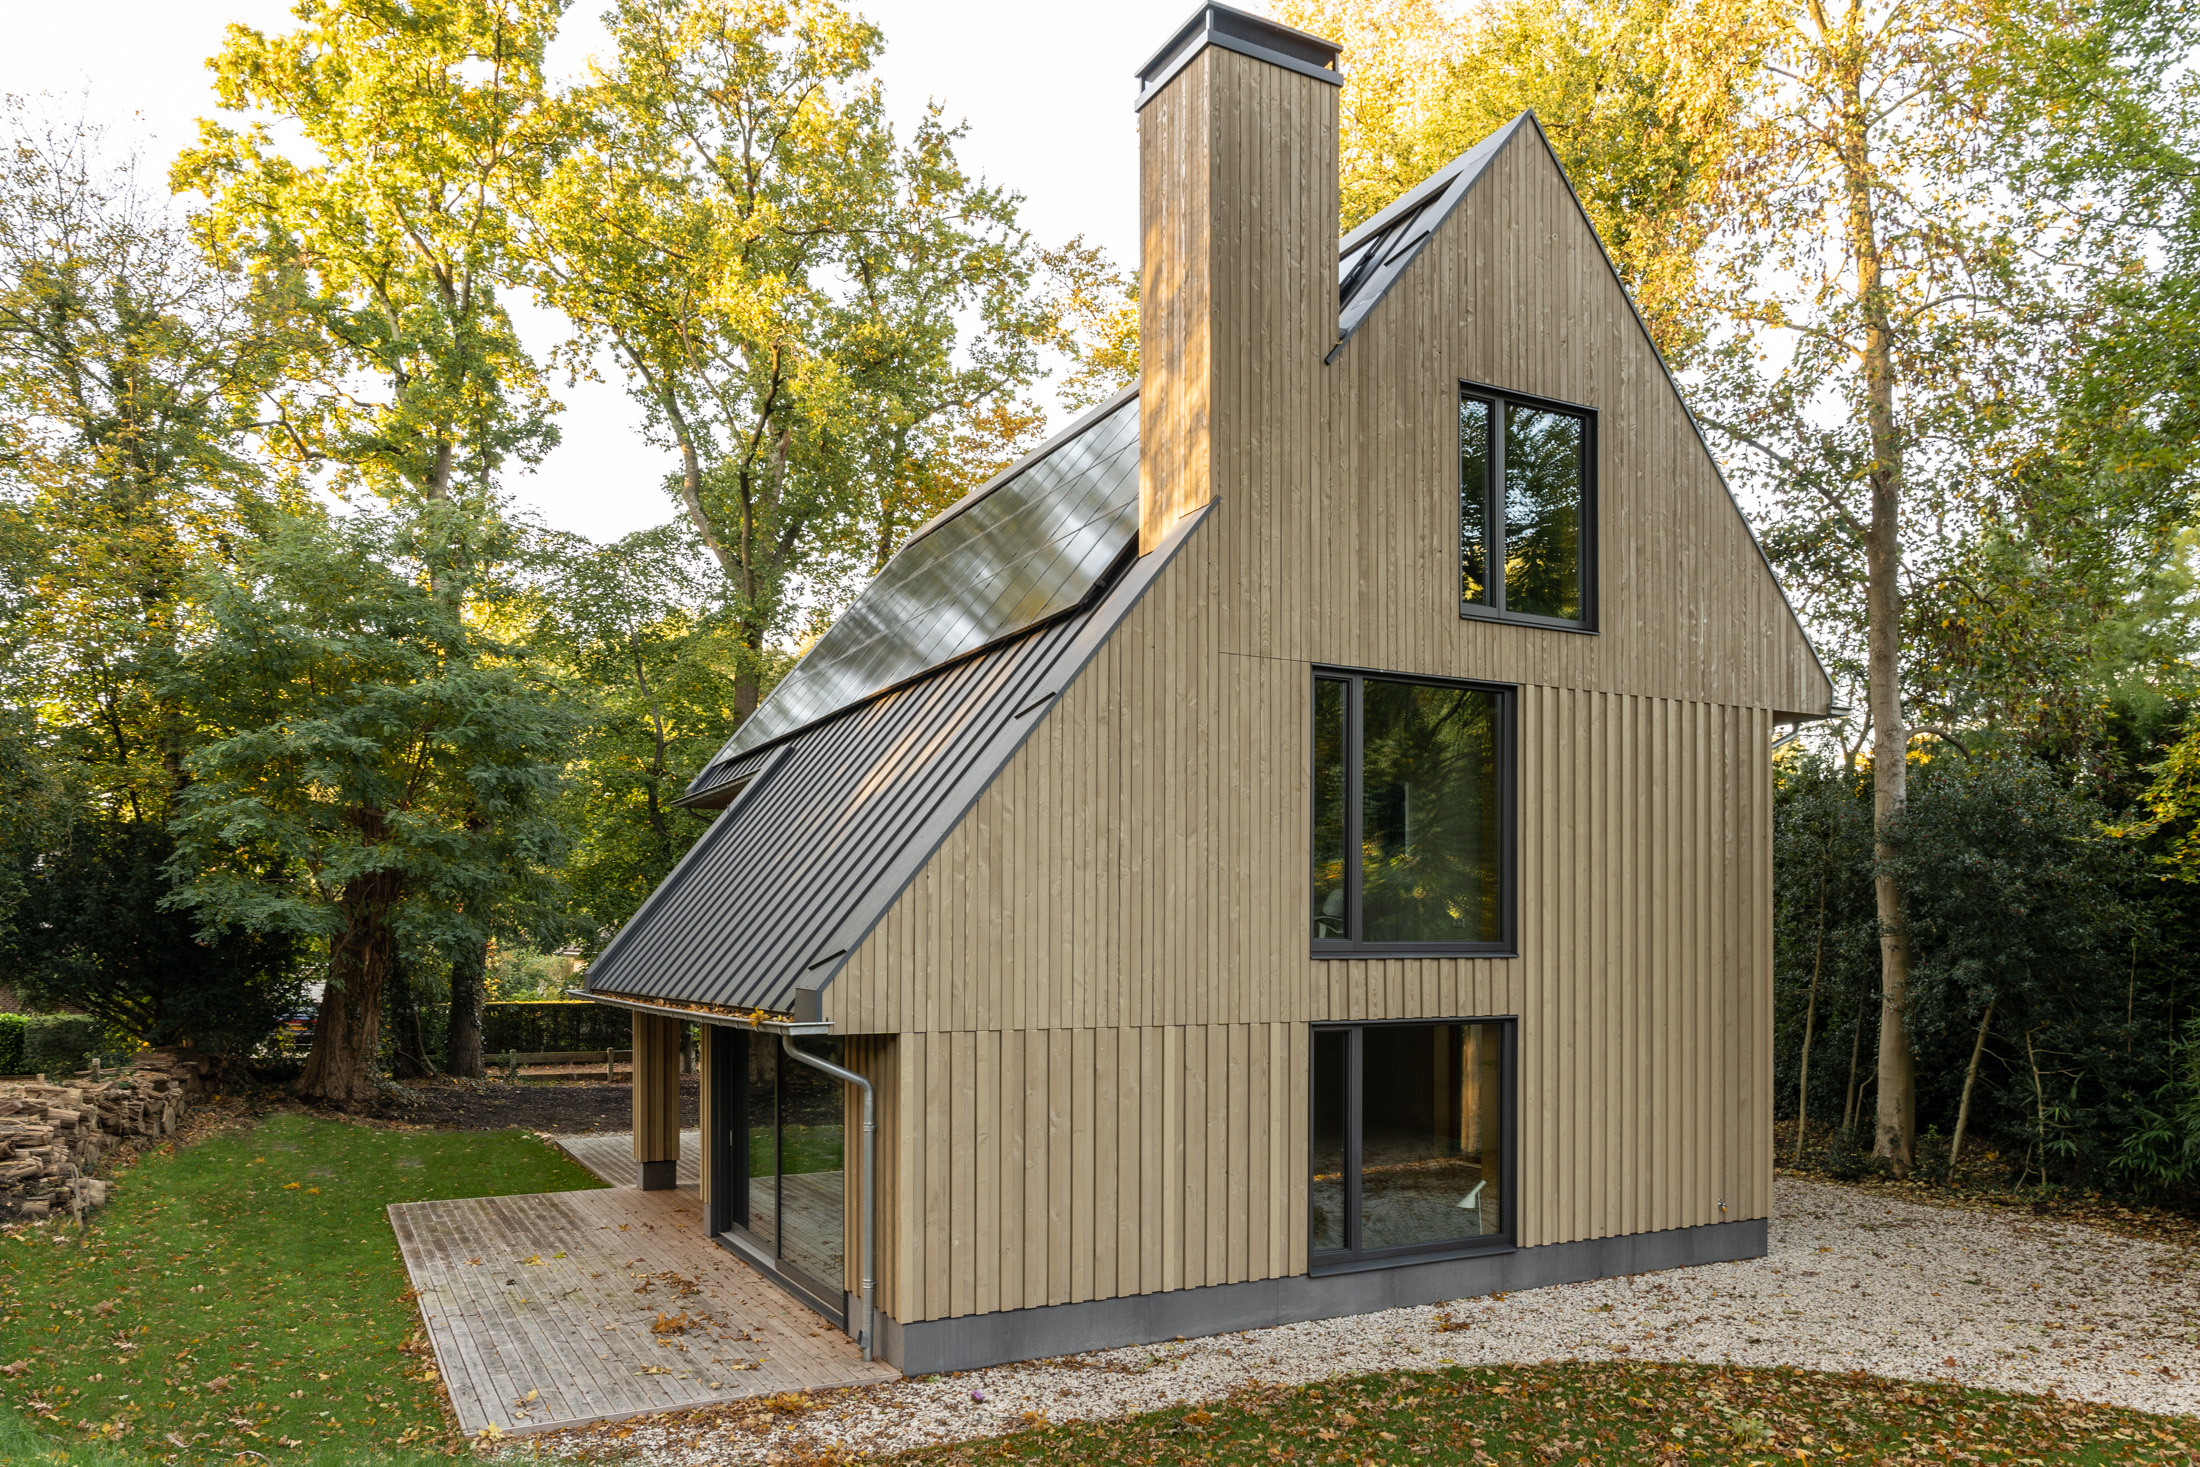 Evalueerbaar Weven ego 5 redenen waarom jij ook een houten huis wilt - vrijstaande-woning - bouwen  - WONEN.nl